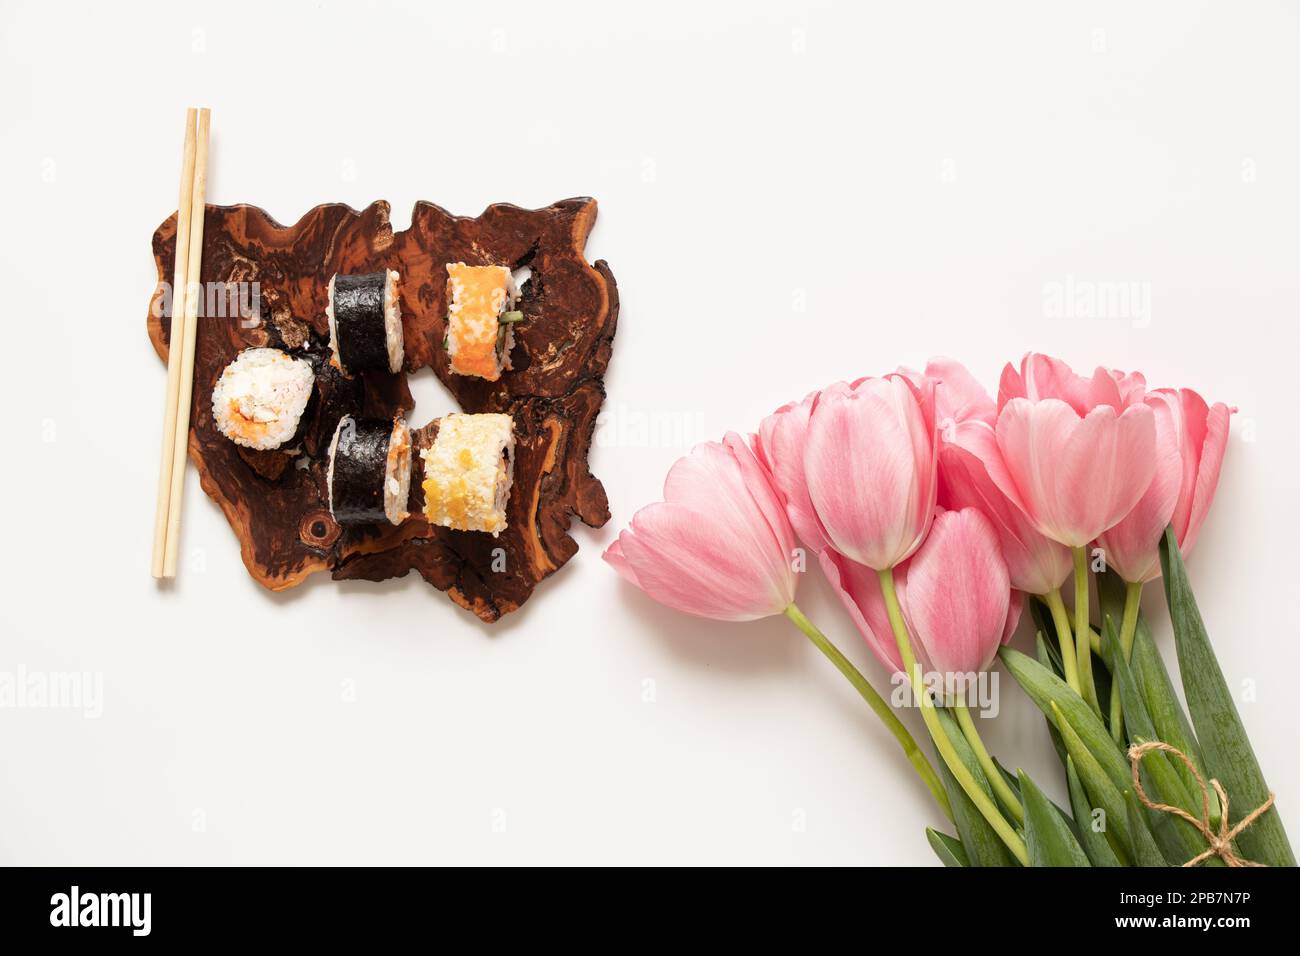 Le sushi se trouve sur une planche en bois à côté d'un bouquet de tulipes roses sur fond blanc, un dîner de vacances Banque D'Images